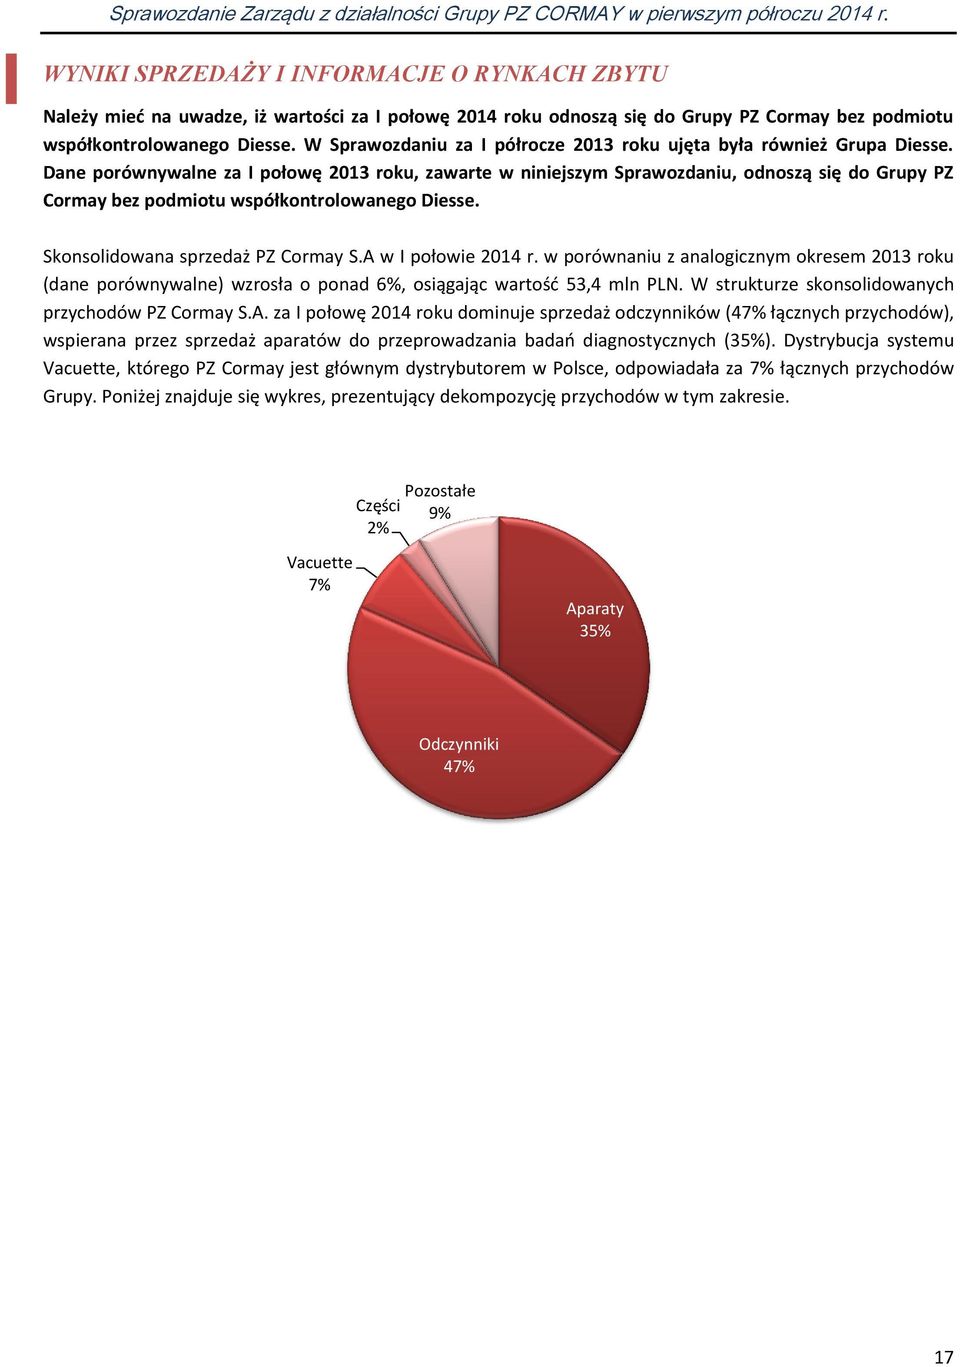 Dane porównywalne za I połowę 2013 roku, zawarte w niniejszym Sprawozdaniu, odnoszą się do Grupy PZ Cormay bez podmiotu współkontrolowanego Diesse. Skonsolidowana sprzedaż PZ Cormay S.